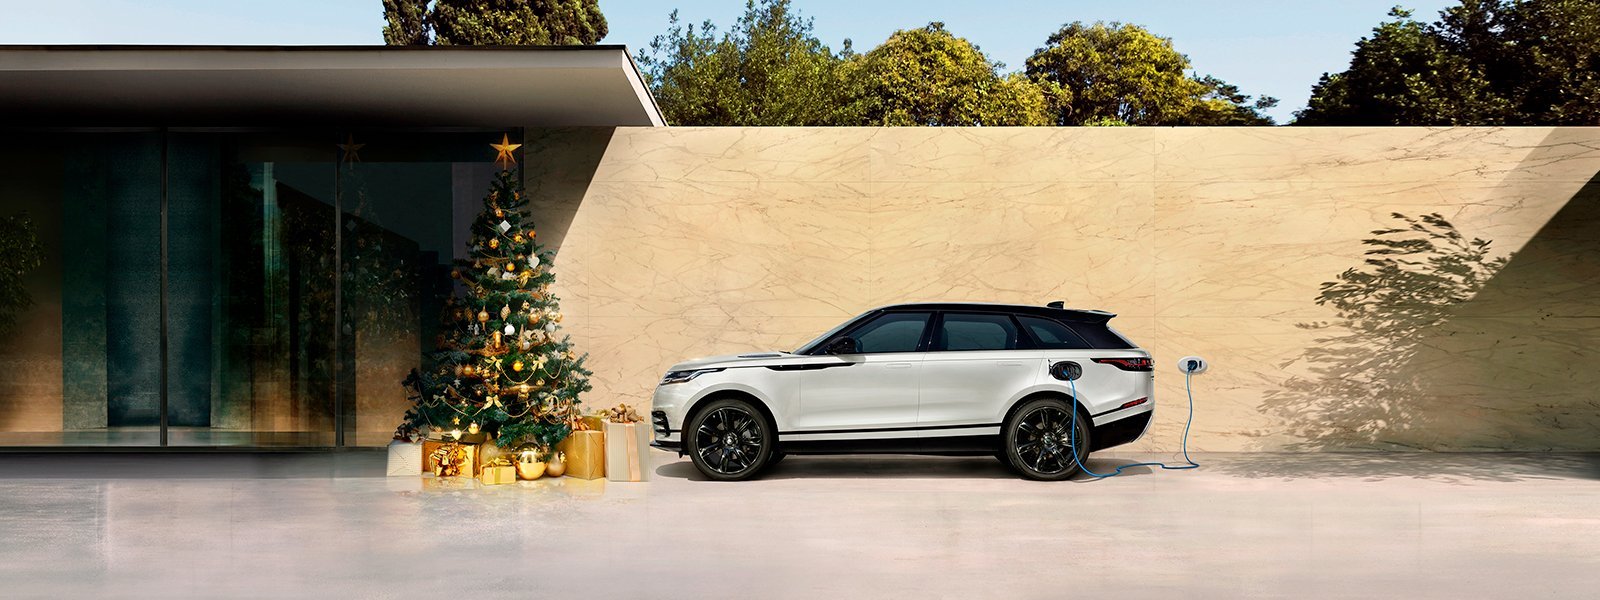 Classic Cars os desea Feliz Navidad y Próspero Año Nuevo